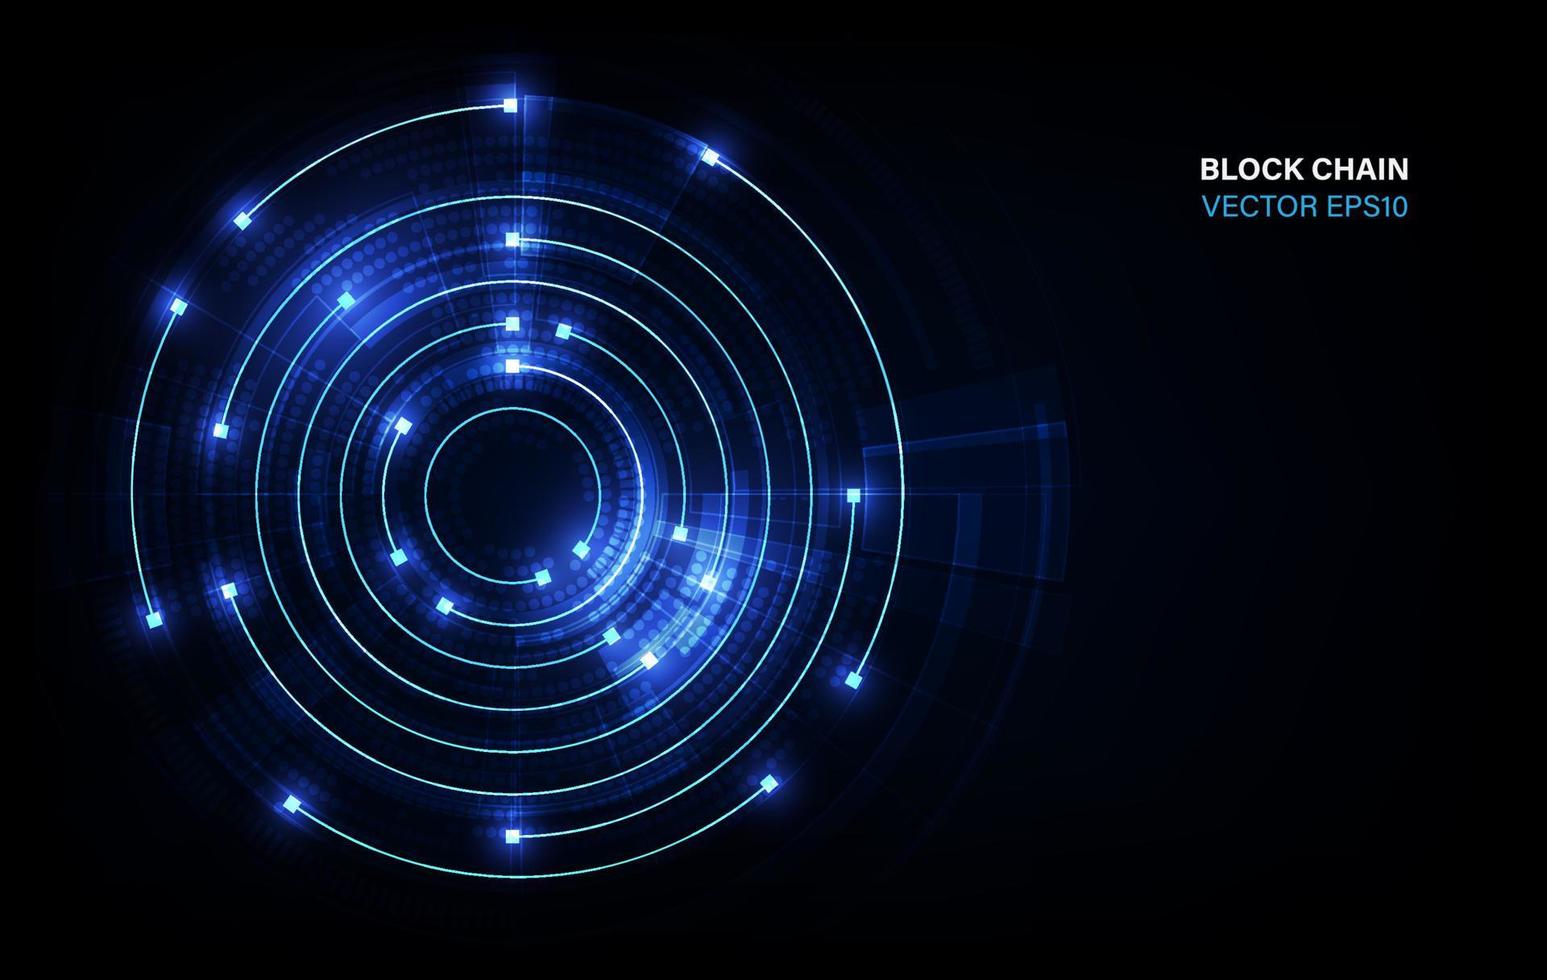 ligne de mouvement d'anneau de cercle de réseau de chaîne de blocs dans le concept de lumière bleue, illustration vectorielle vecteur